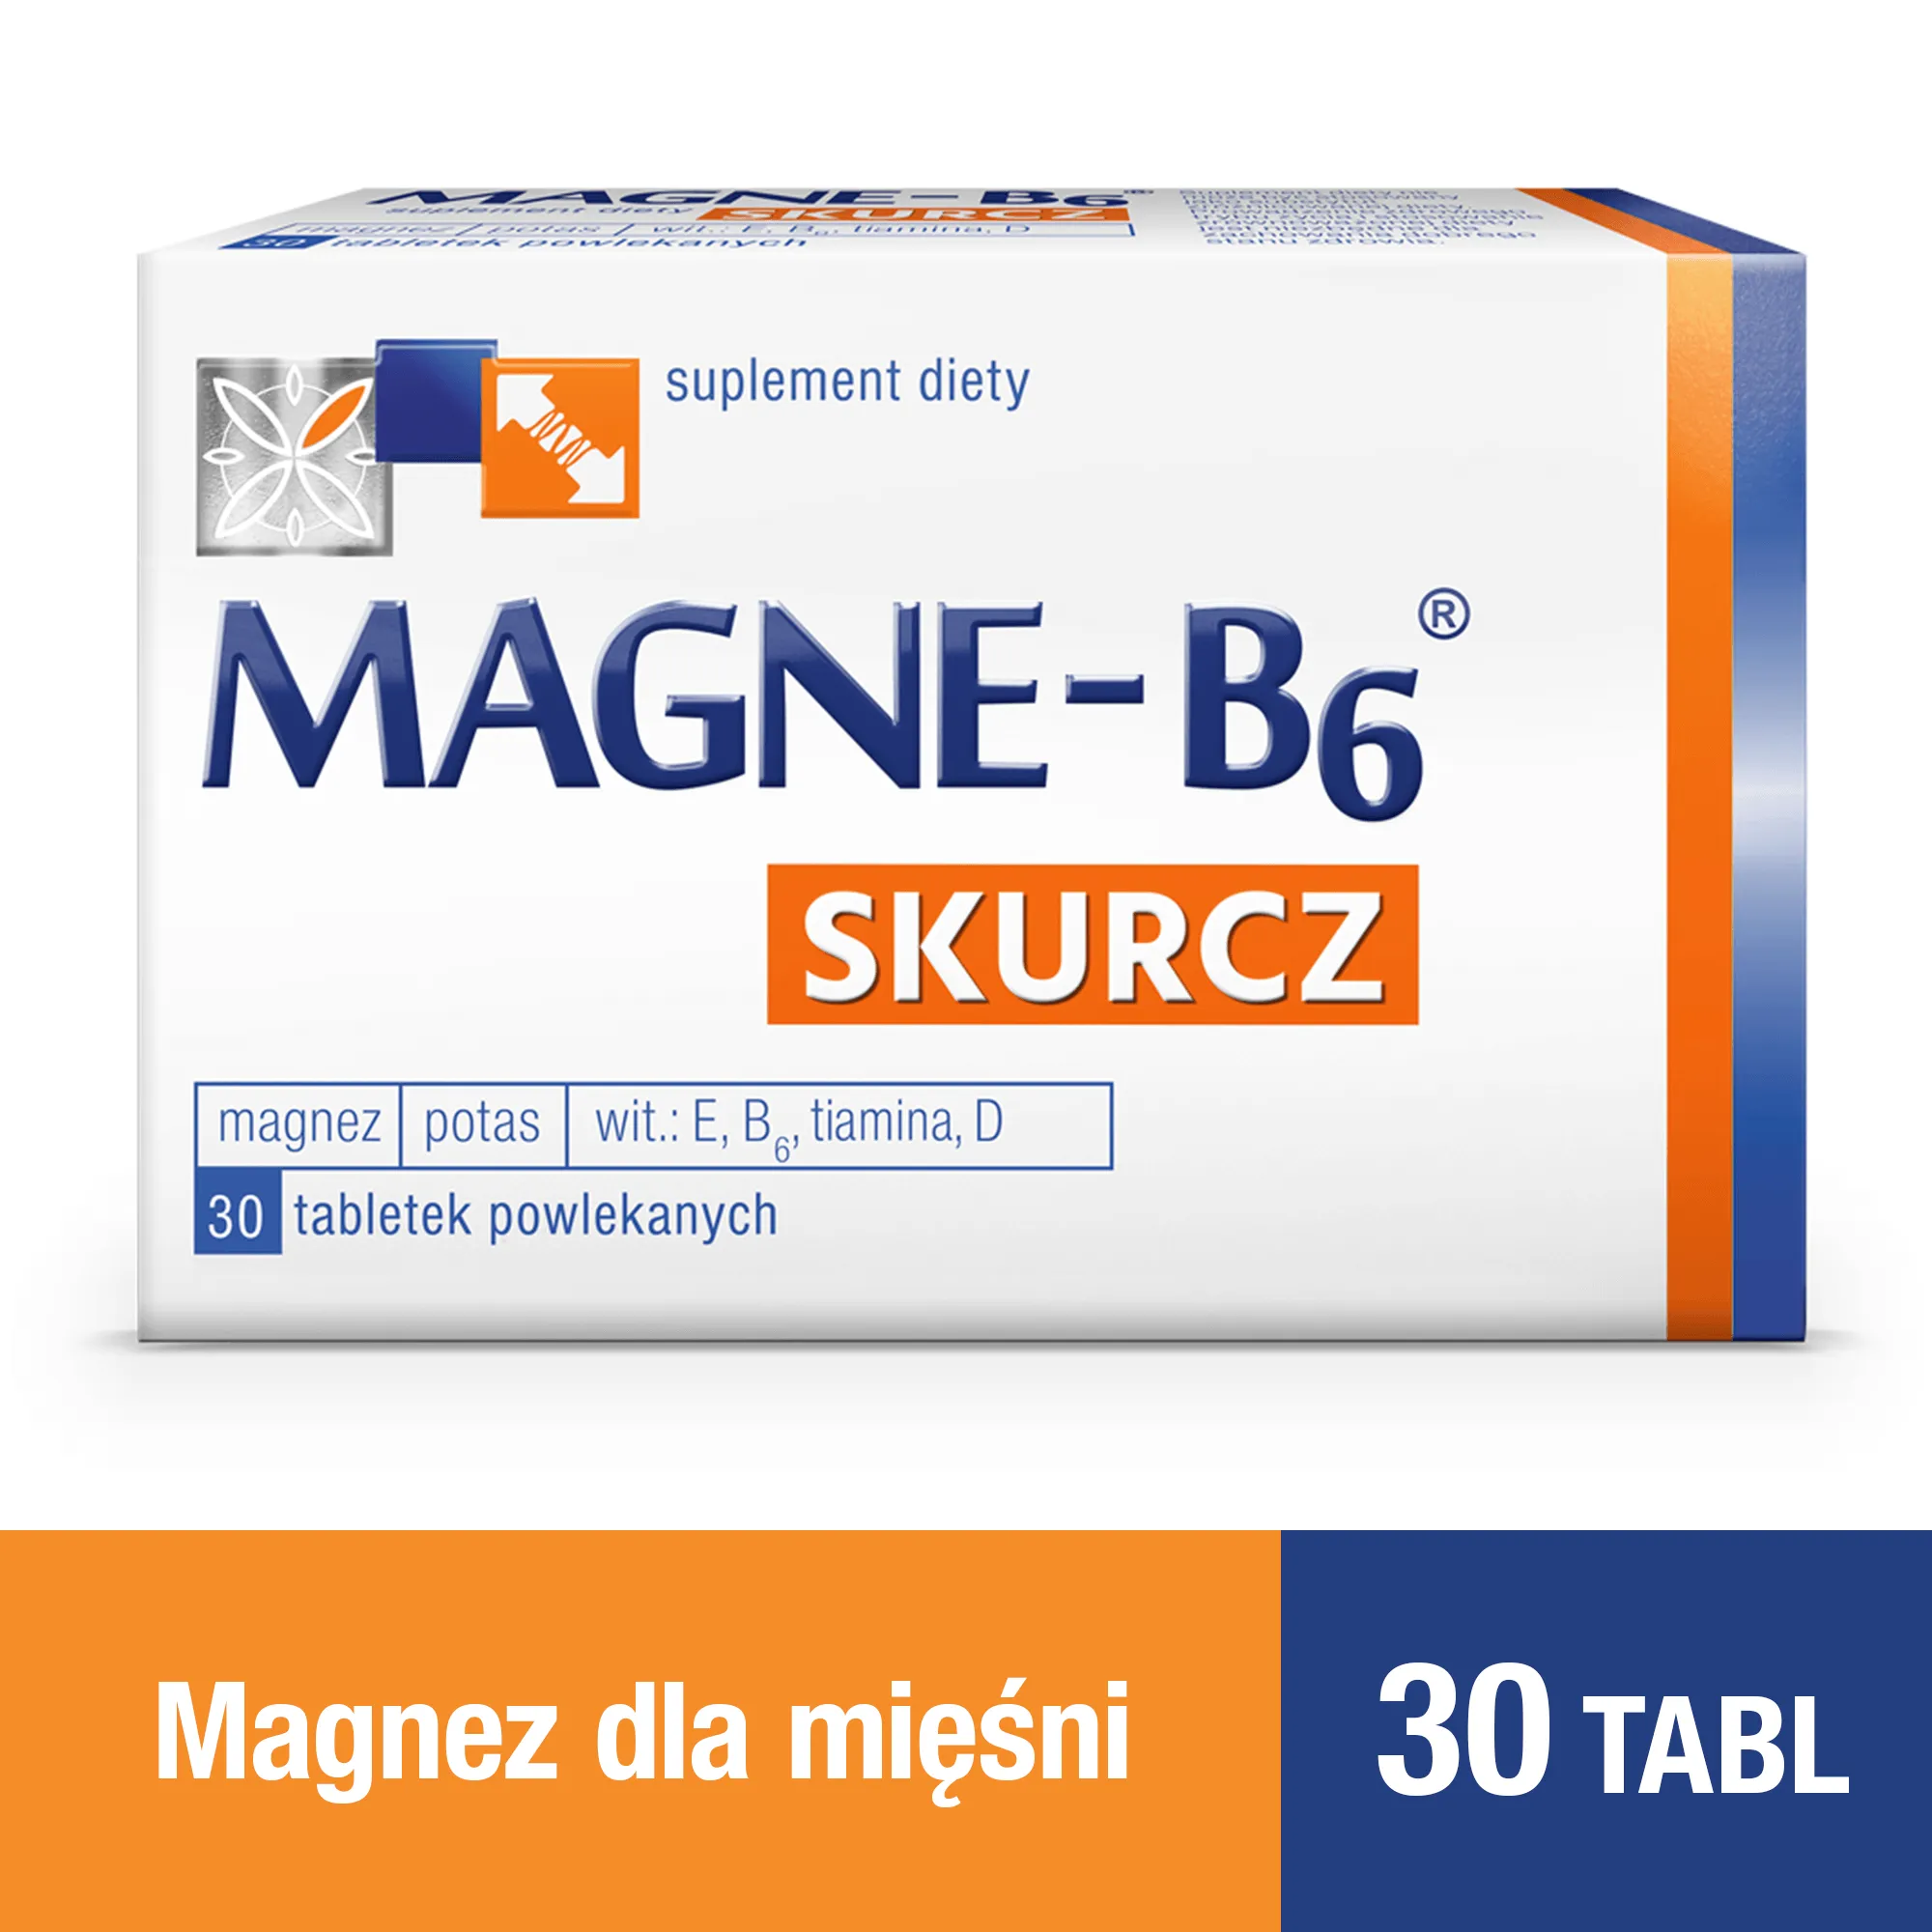 Magne-B6 Skurcz - 30 tabletek stosowanych w celu uzupełnienia diety o składniki preparatu 